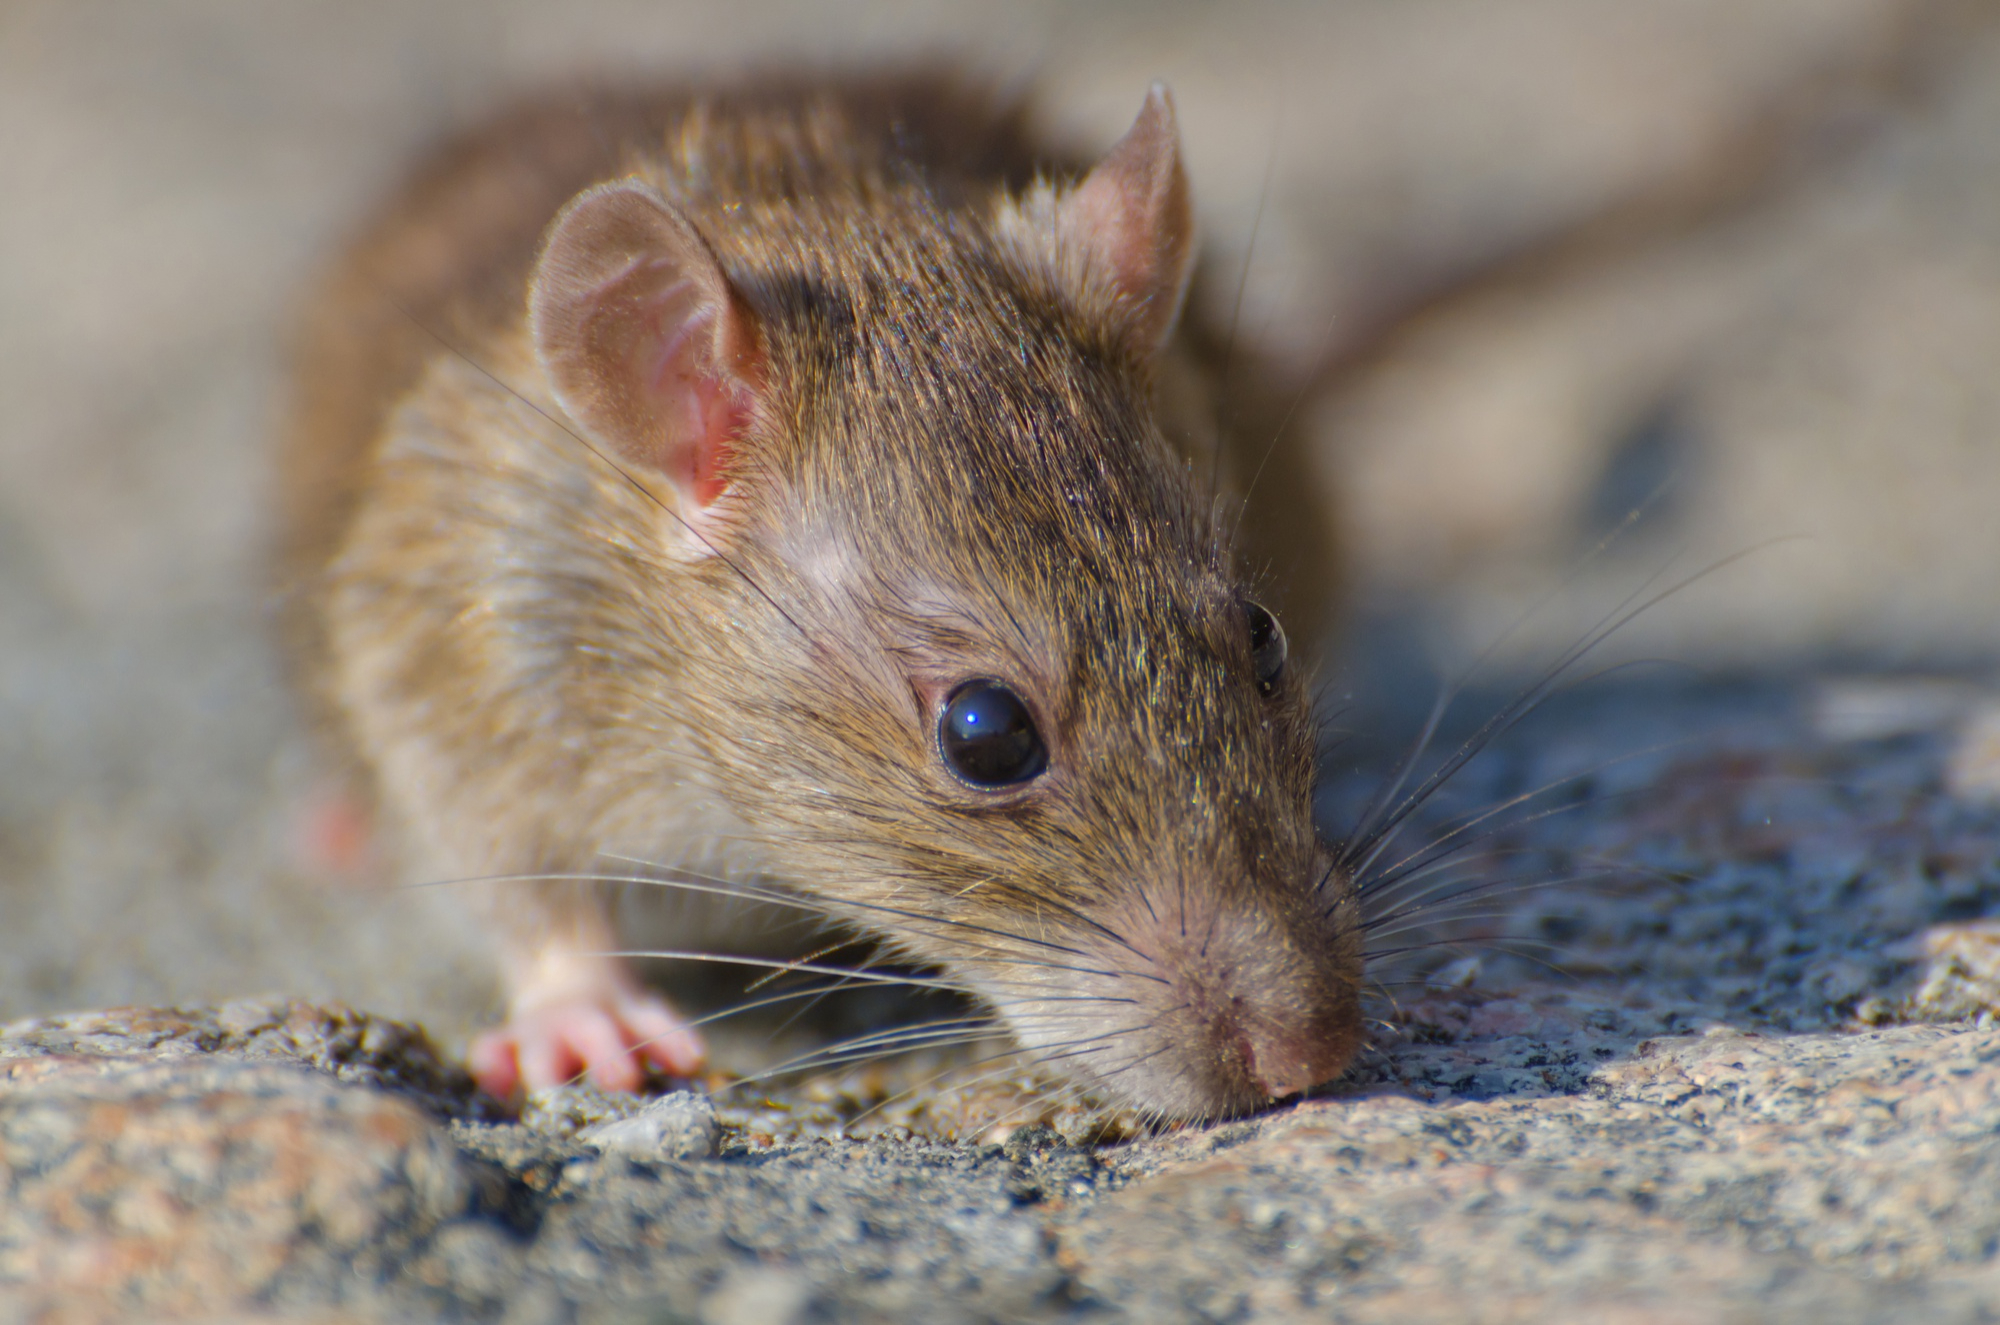 HMS: препараты сенолитики помогли улучшить здоровье пожилых мышей